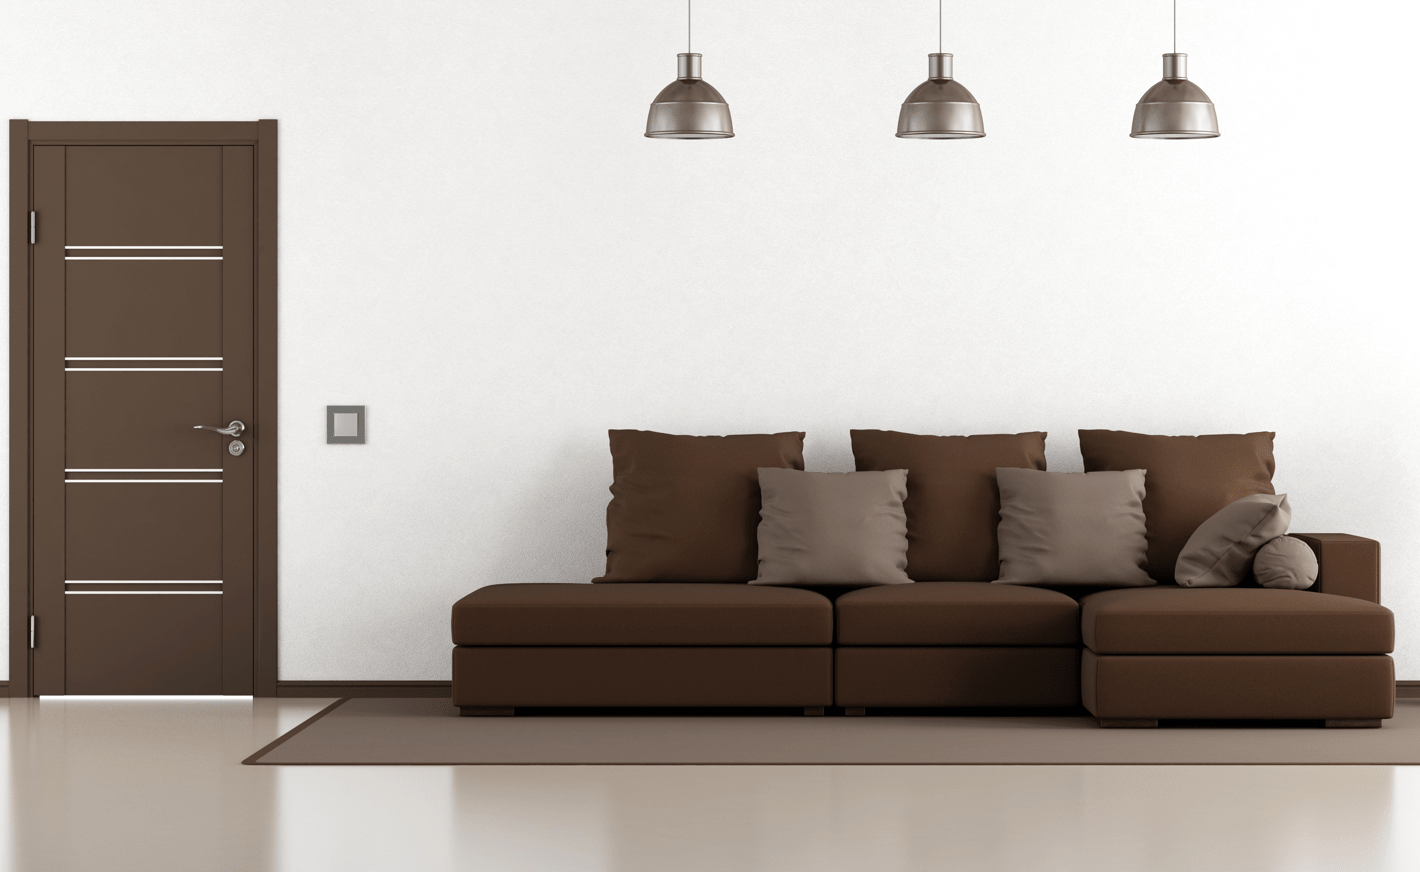 Cómo combinar los cojines con un sofá gris - Foto 1